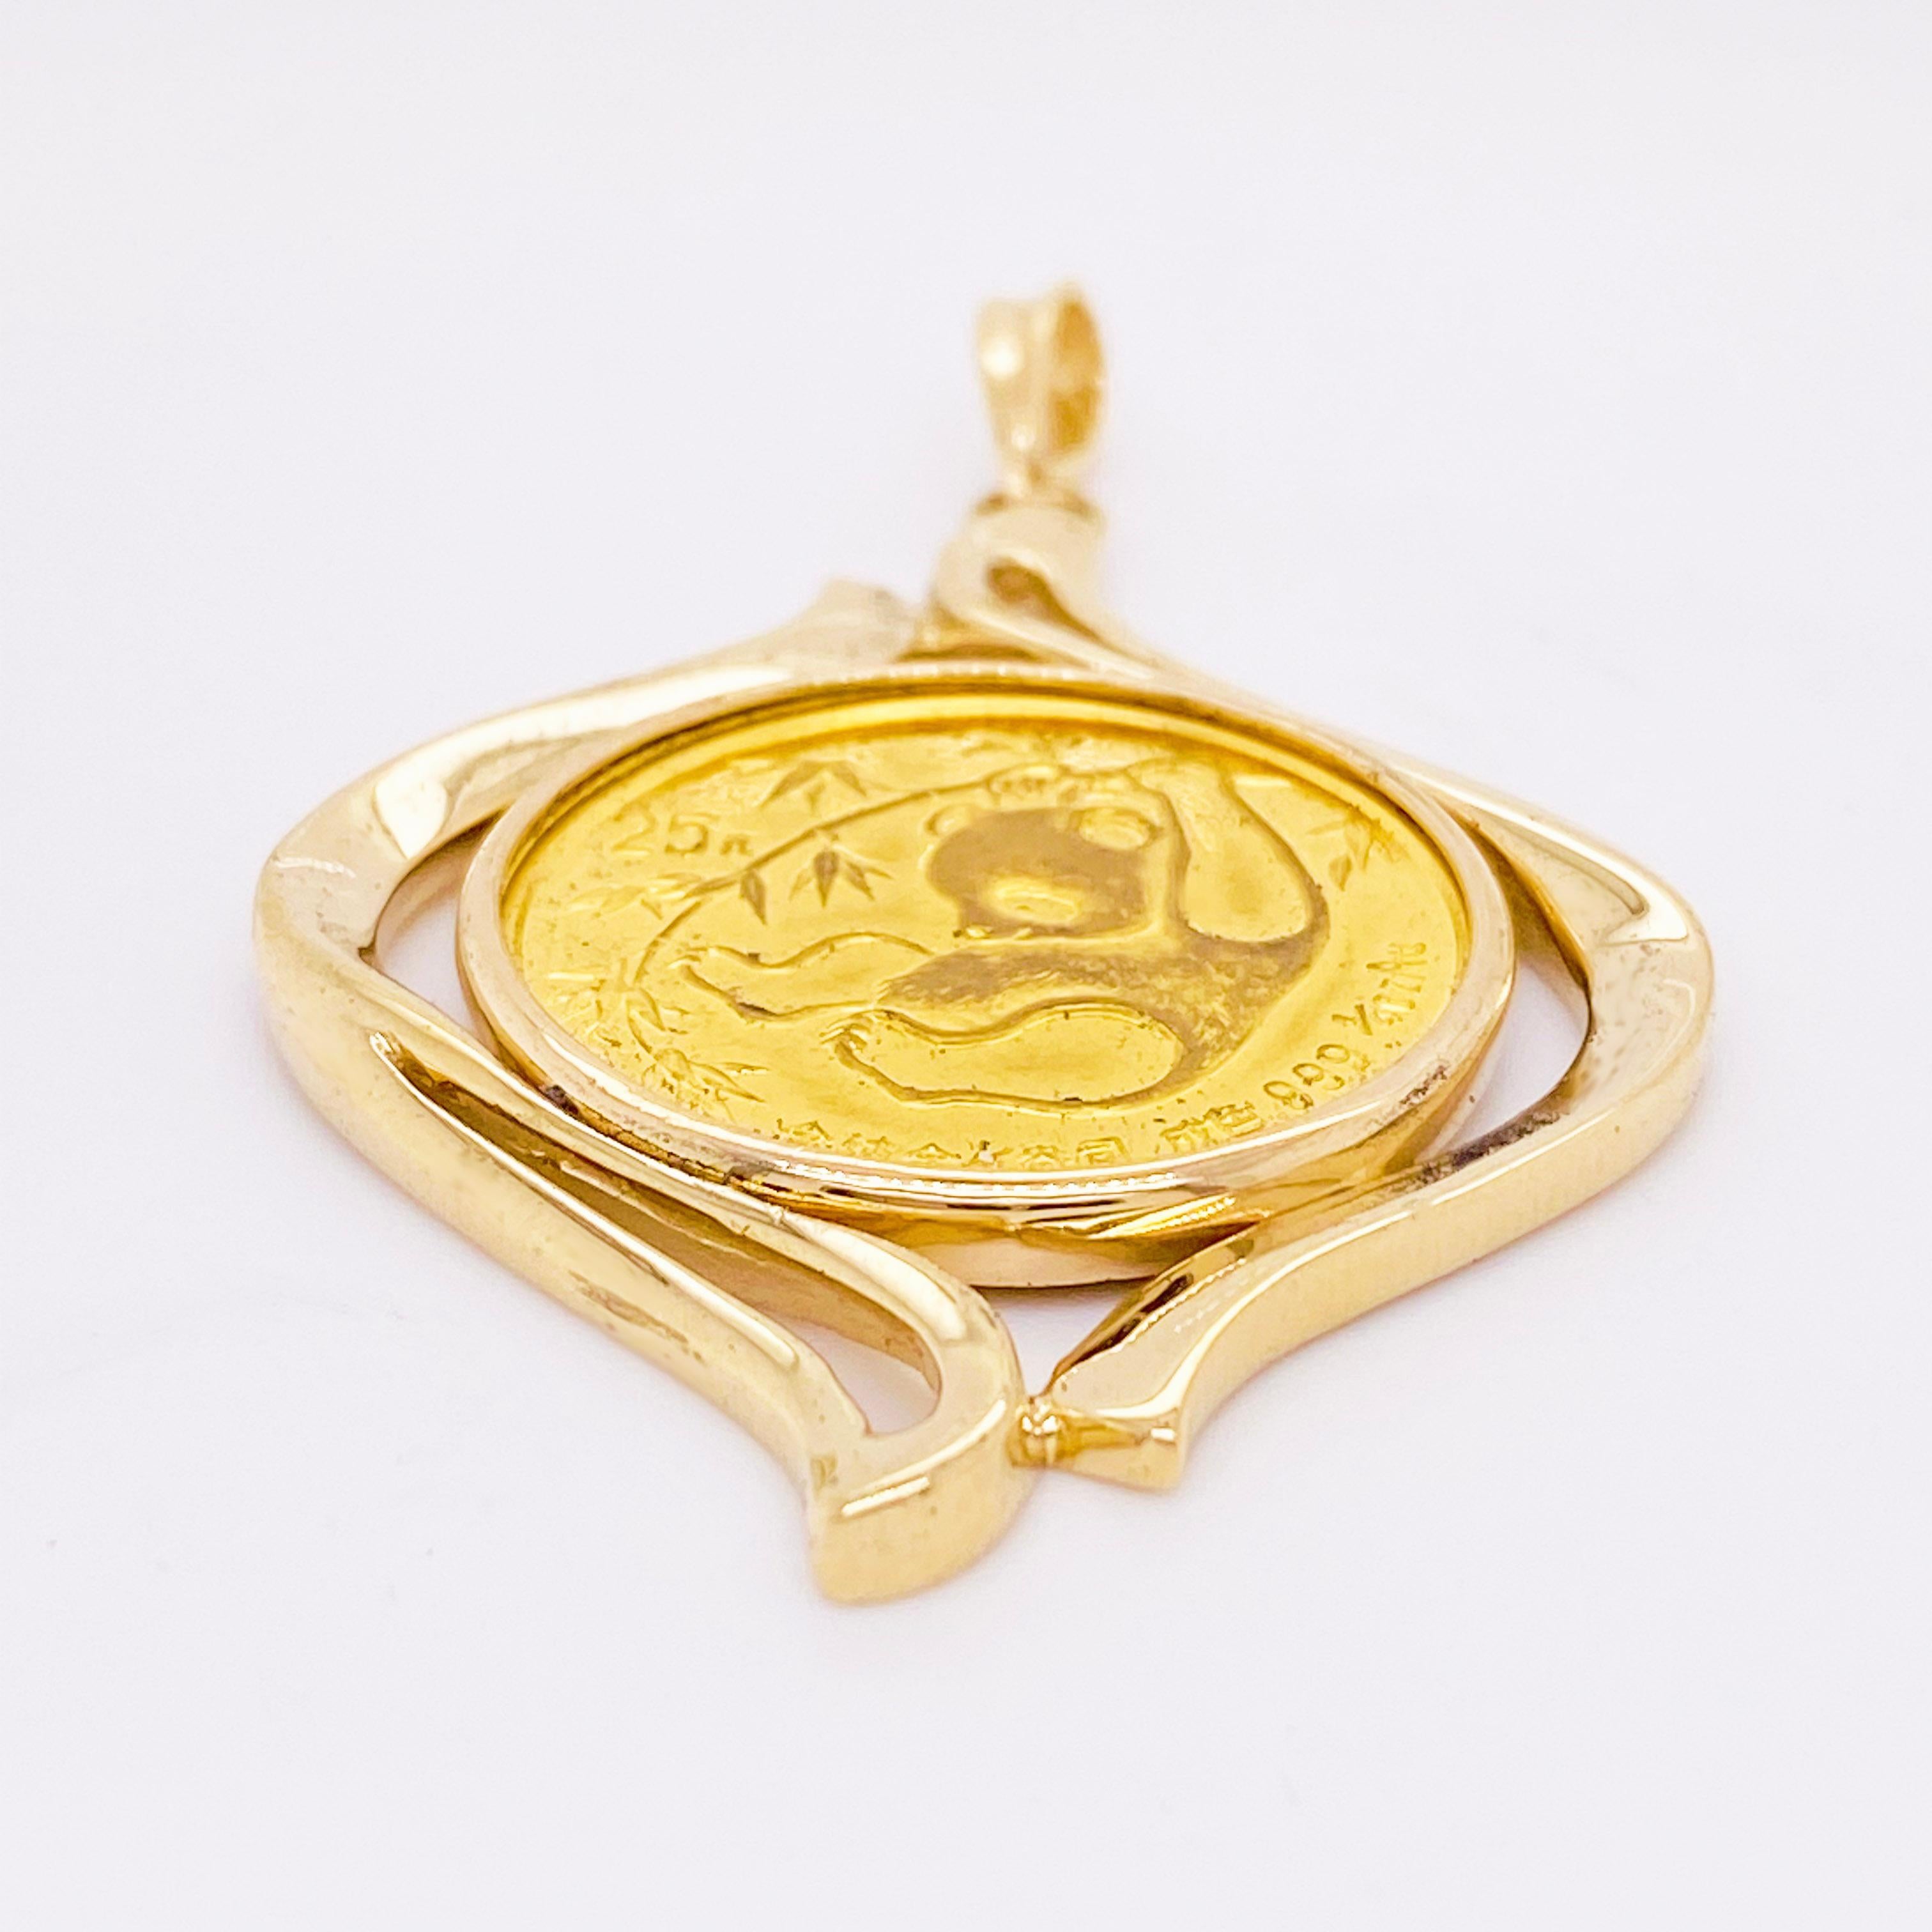 1 oz gold coin pendant